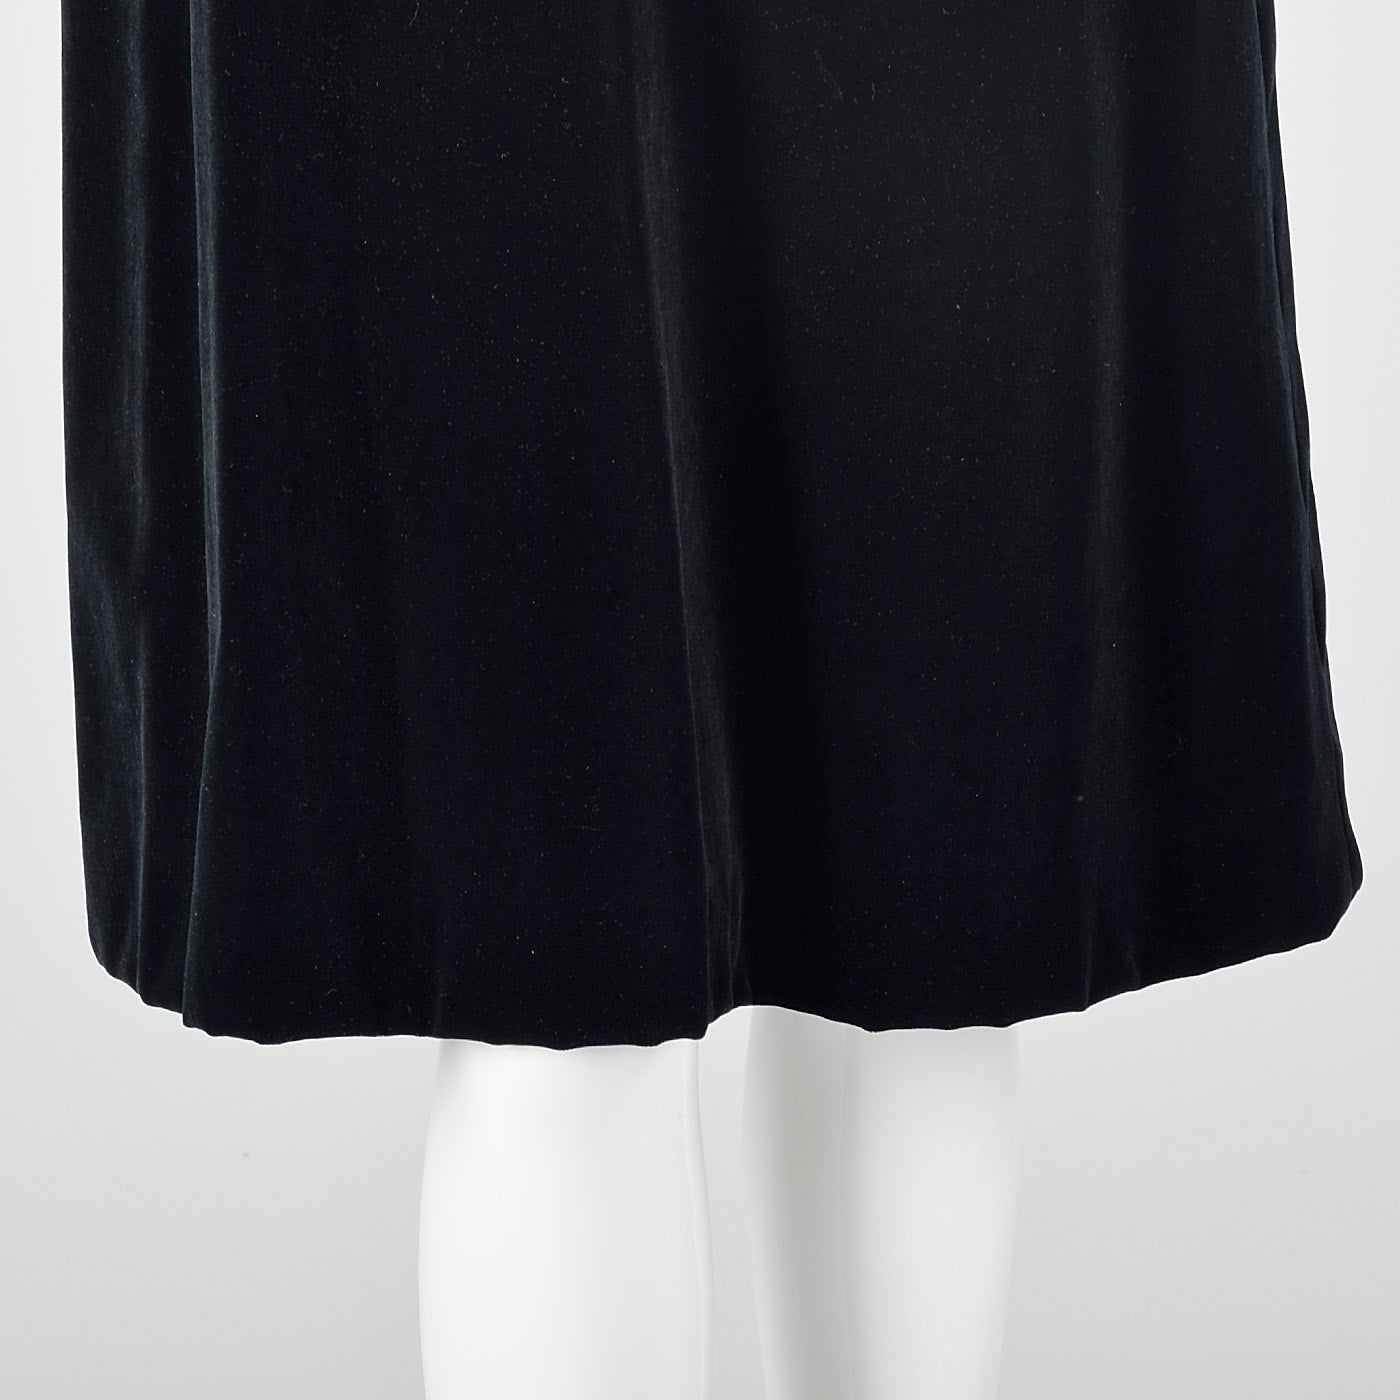 Small  1960s Black Velvet Dress